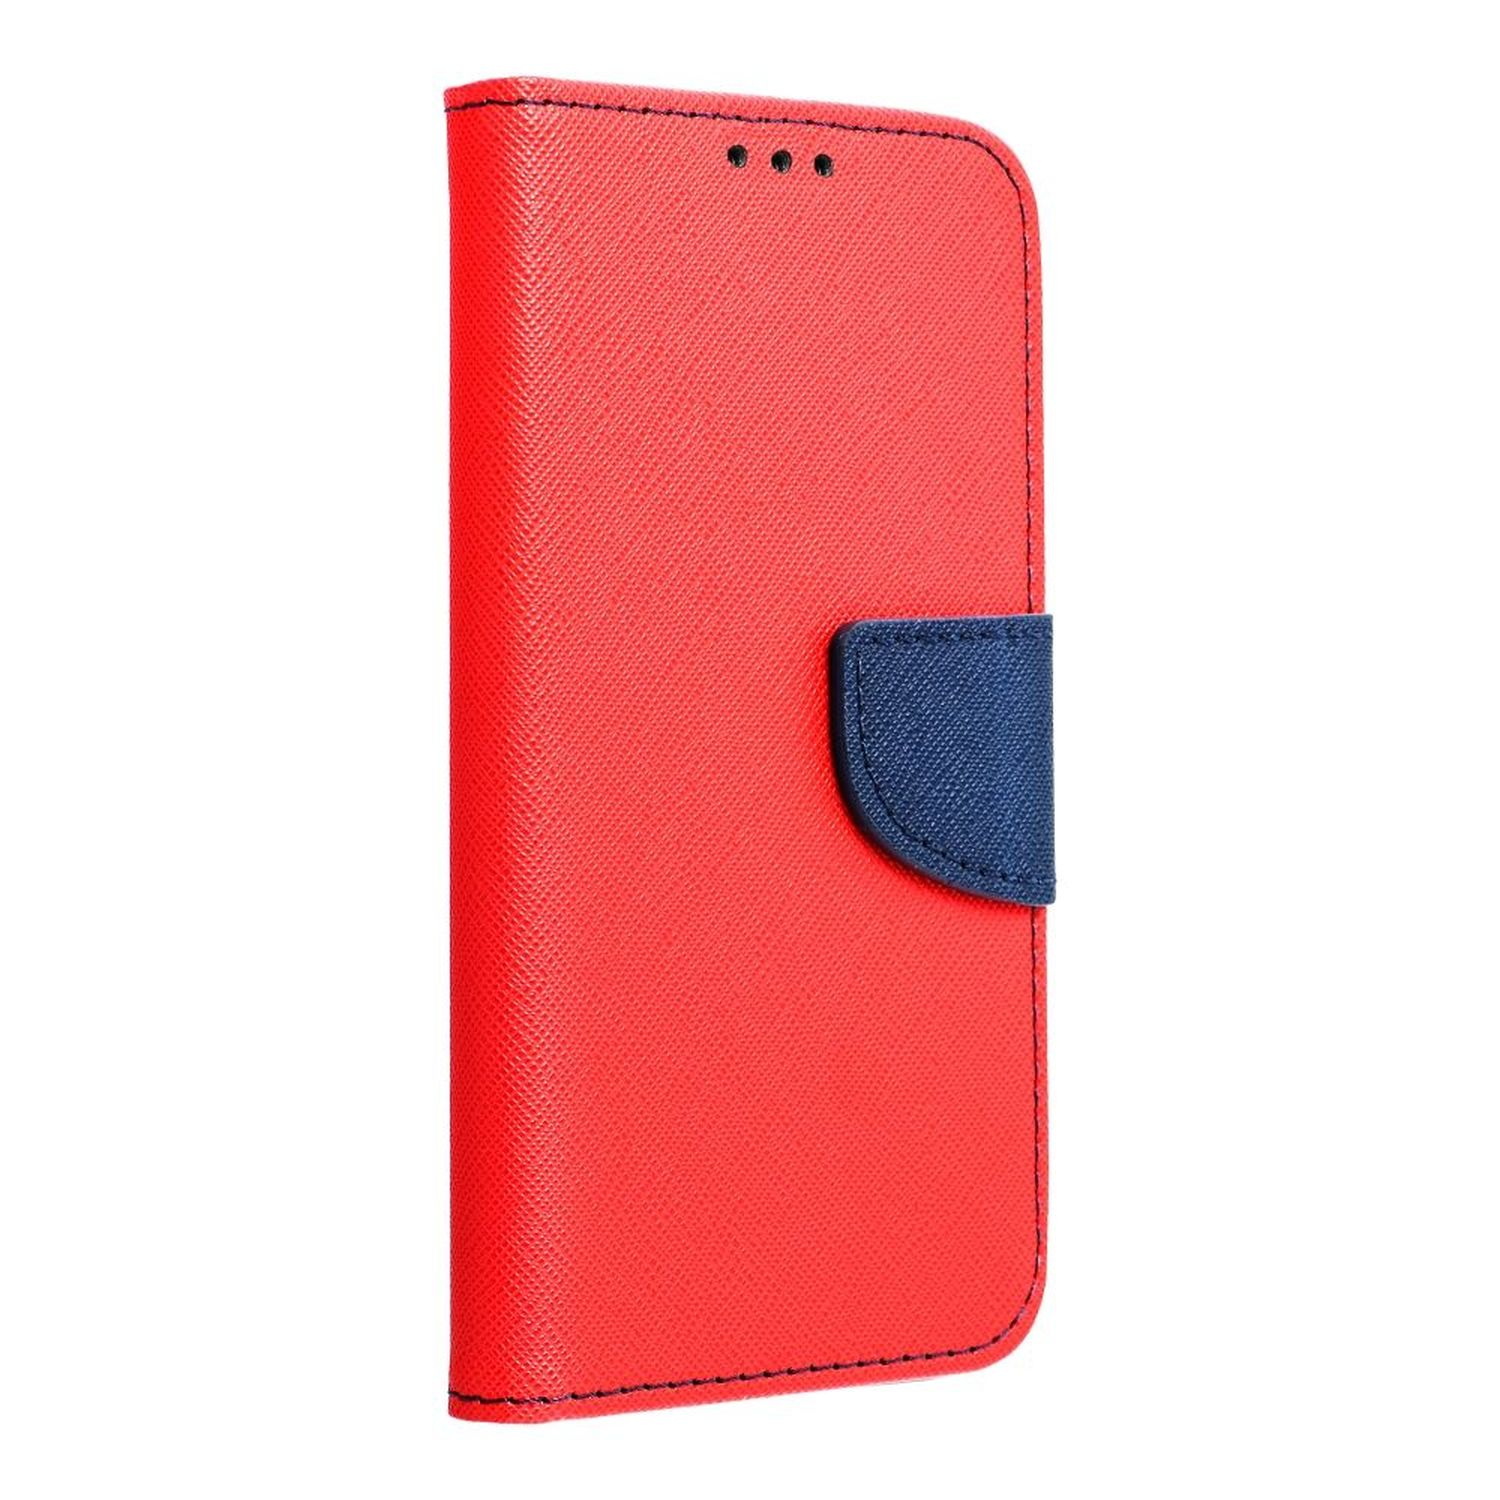 A14 Tasche, 5G, Galaxy Rot-Blau COFI Samsung, Bookcover, Buch